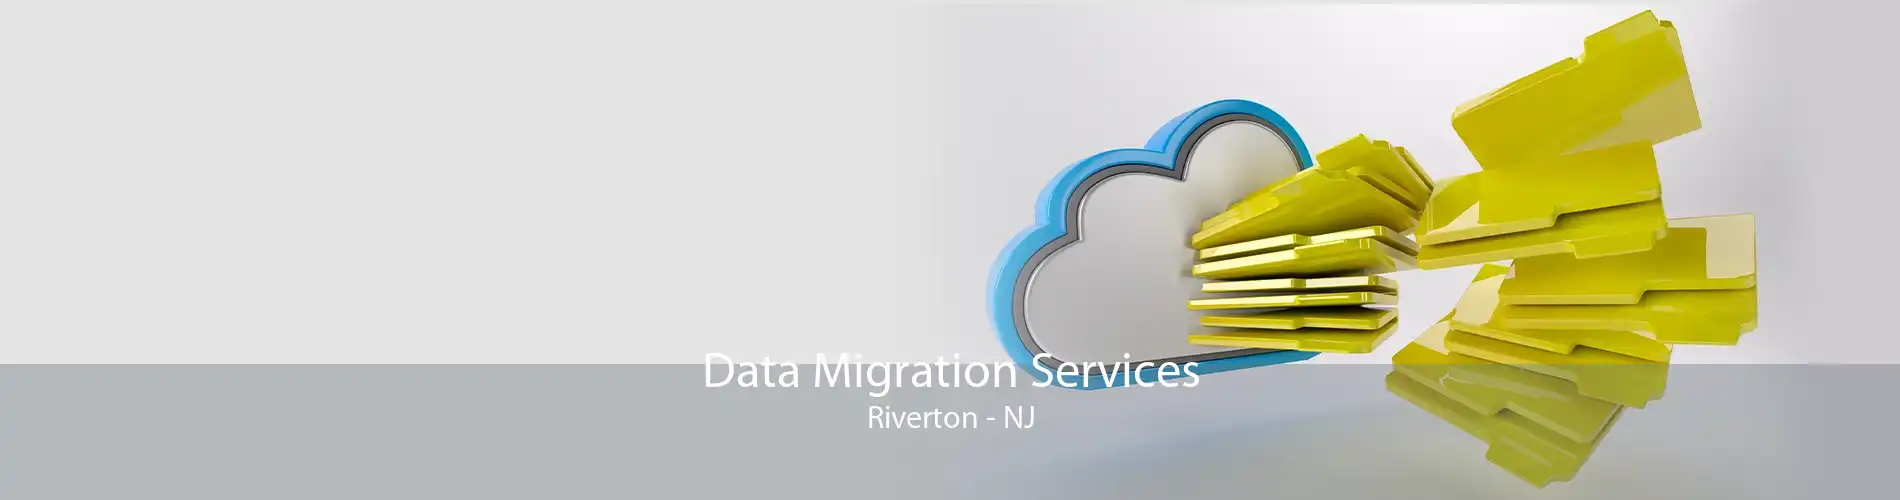 Data Migration Services Riverton - NJ